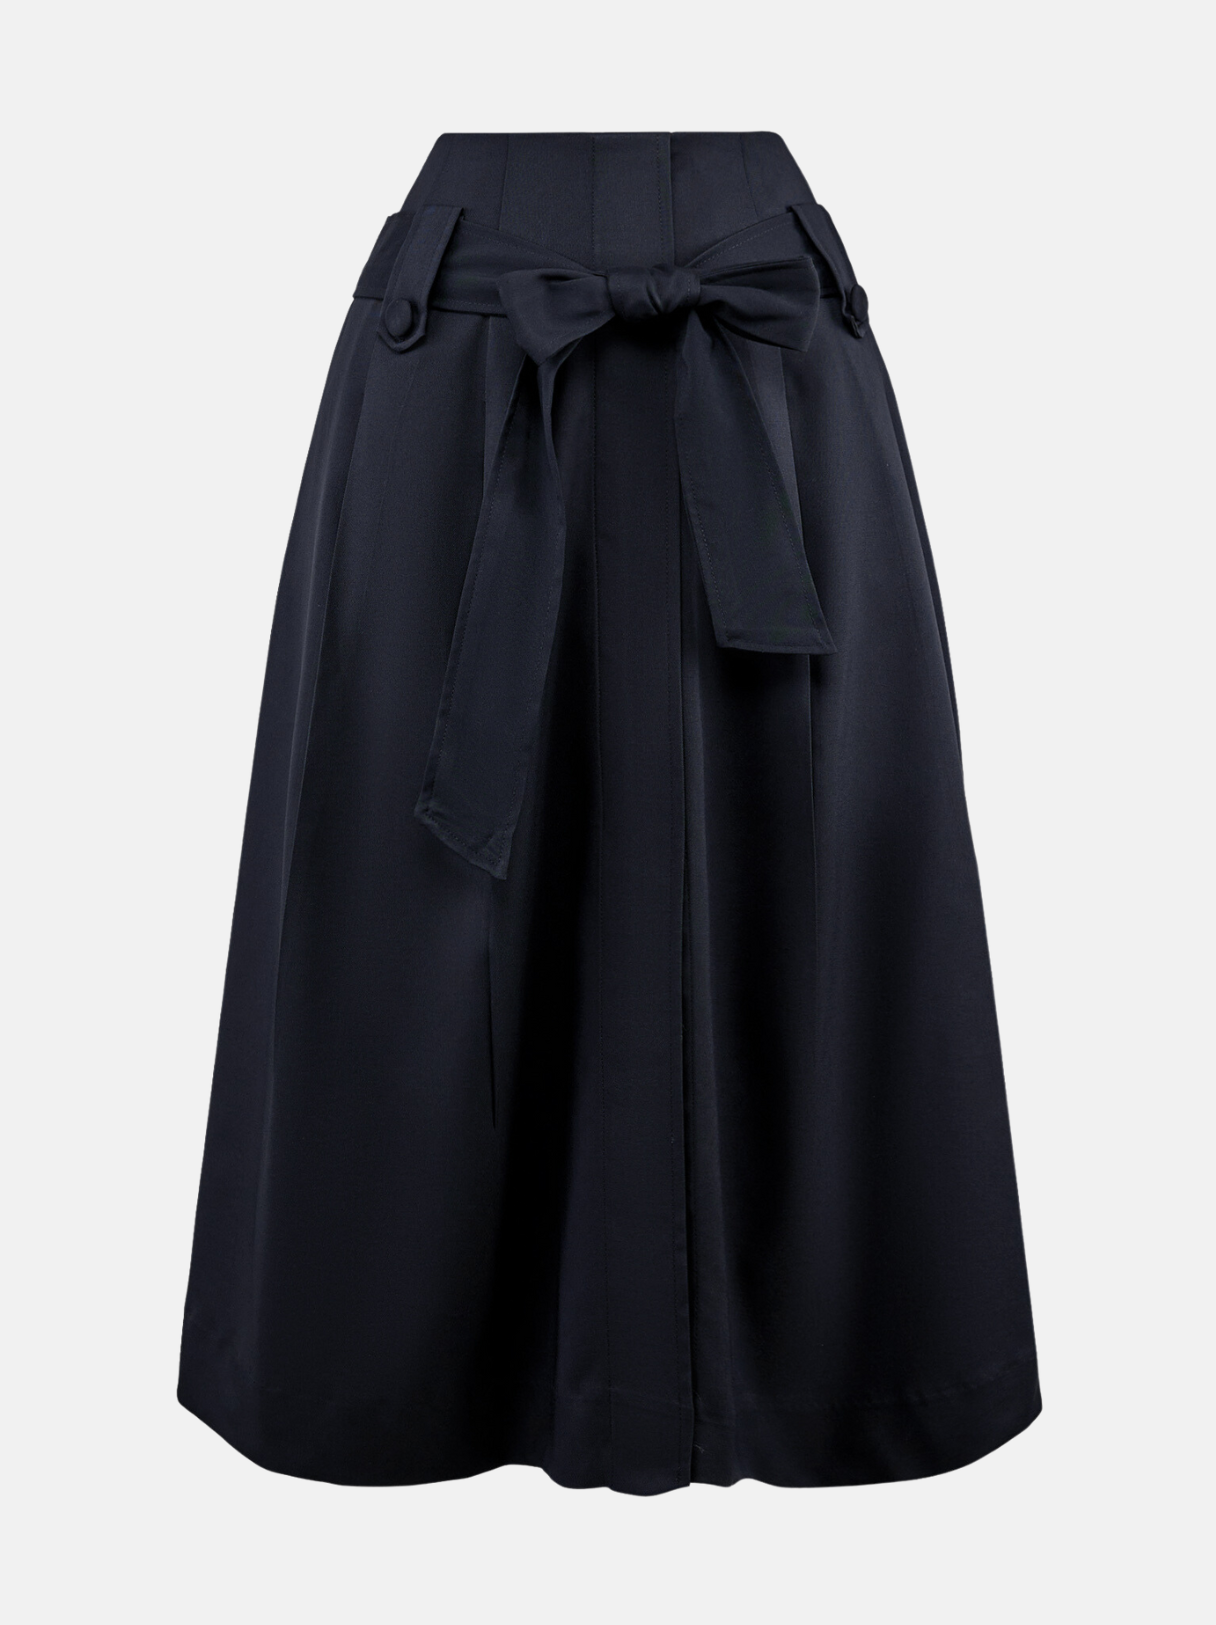 33029B32 - Chân váy đen xòe - Tuýt si. Thời trang nữ Toson